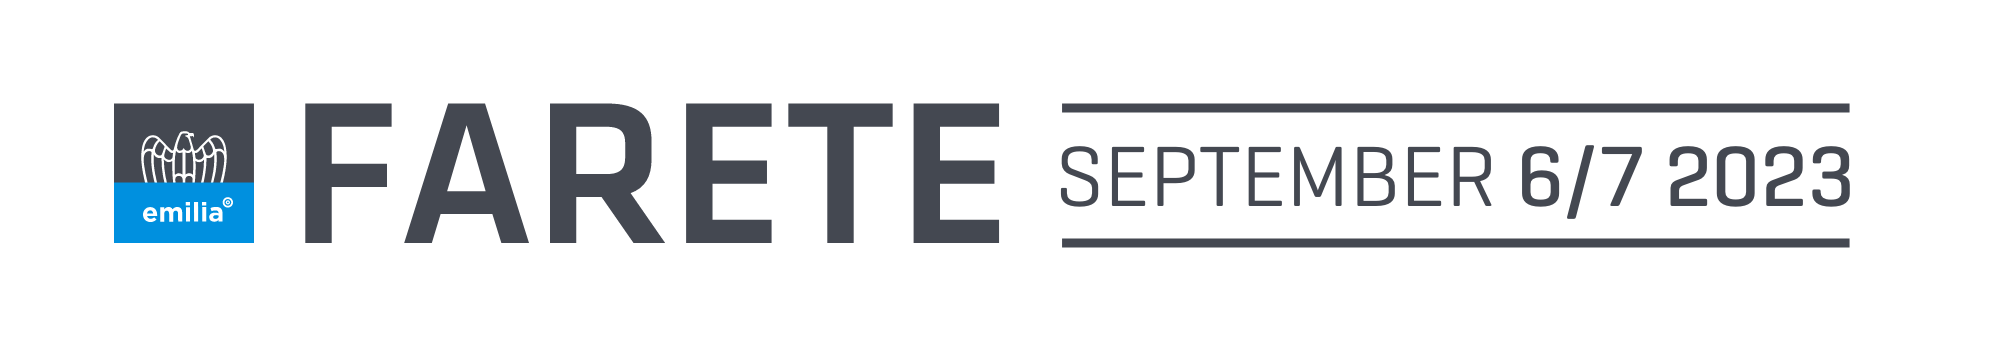 Farete Logo - September 6/7 2023